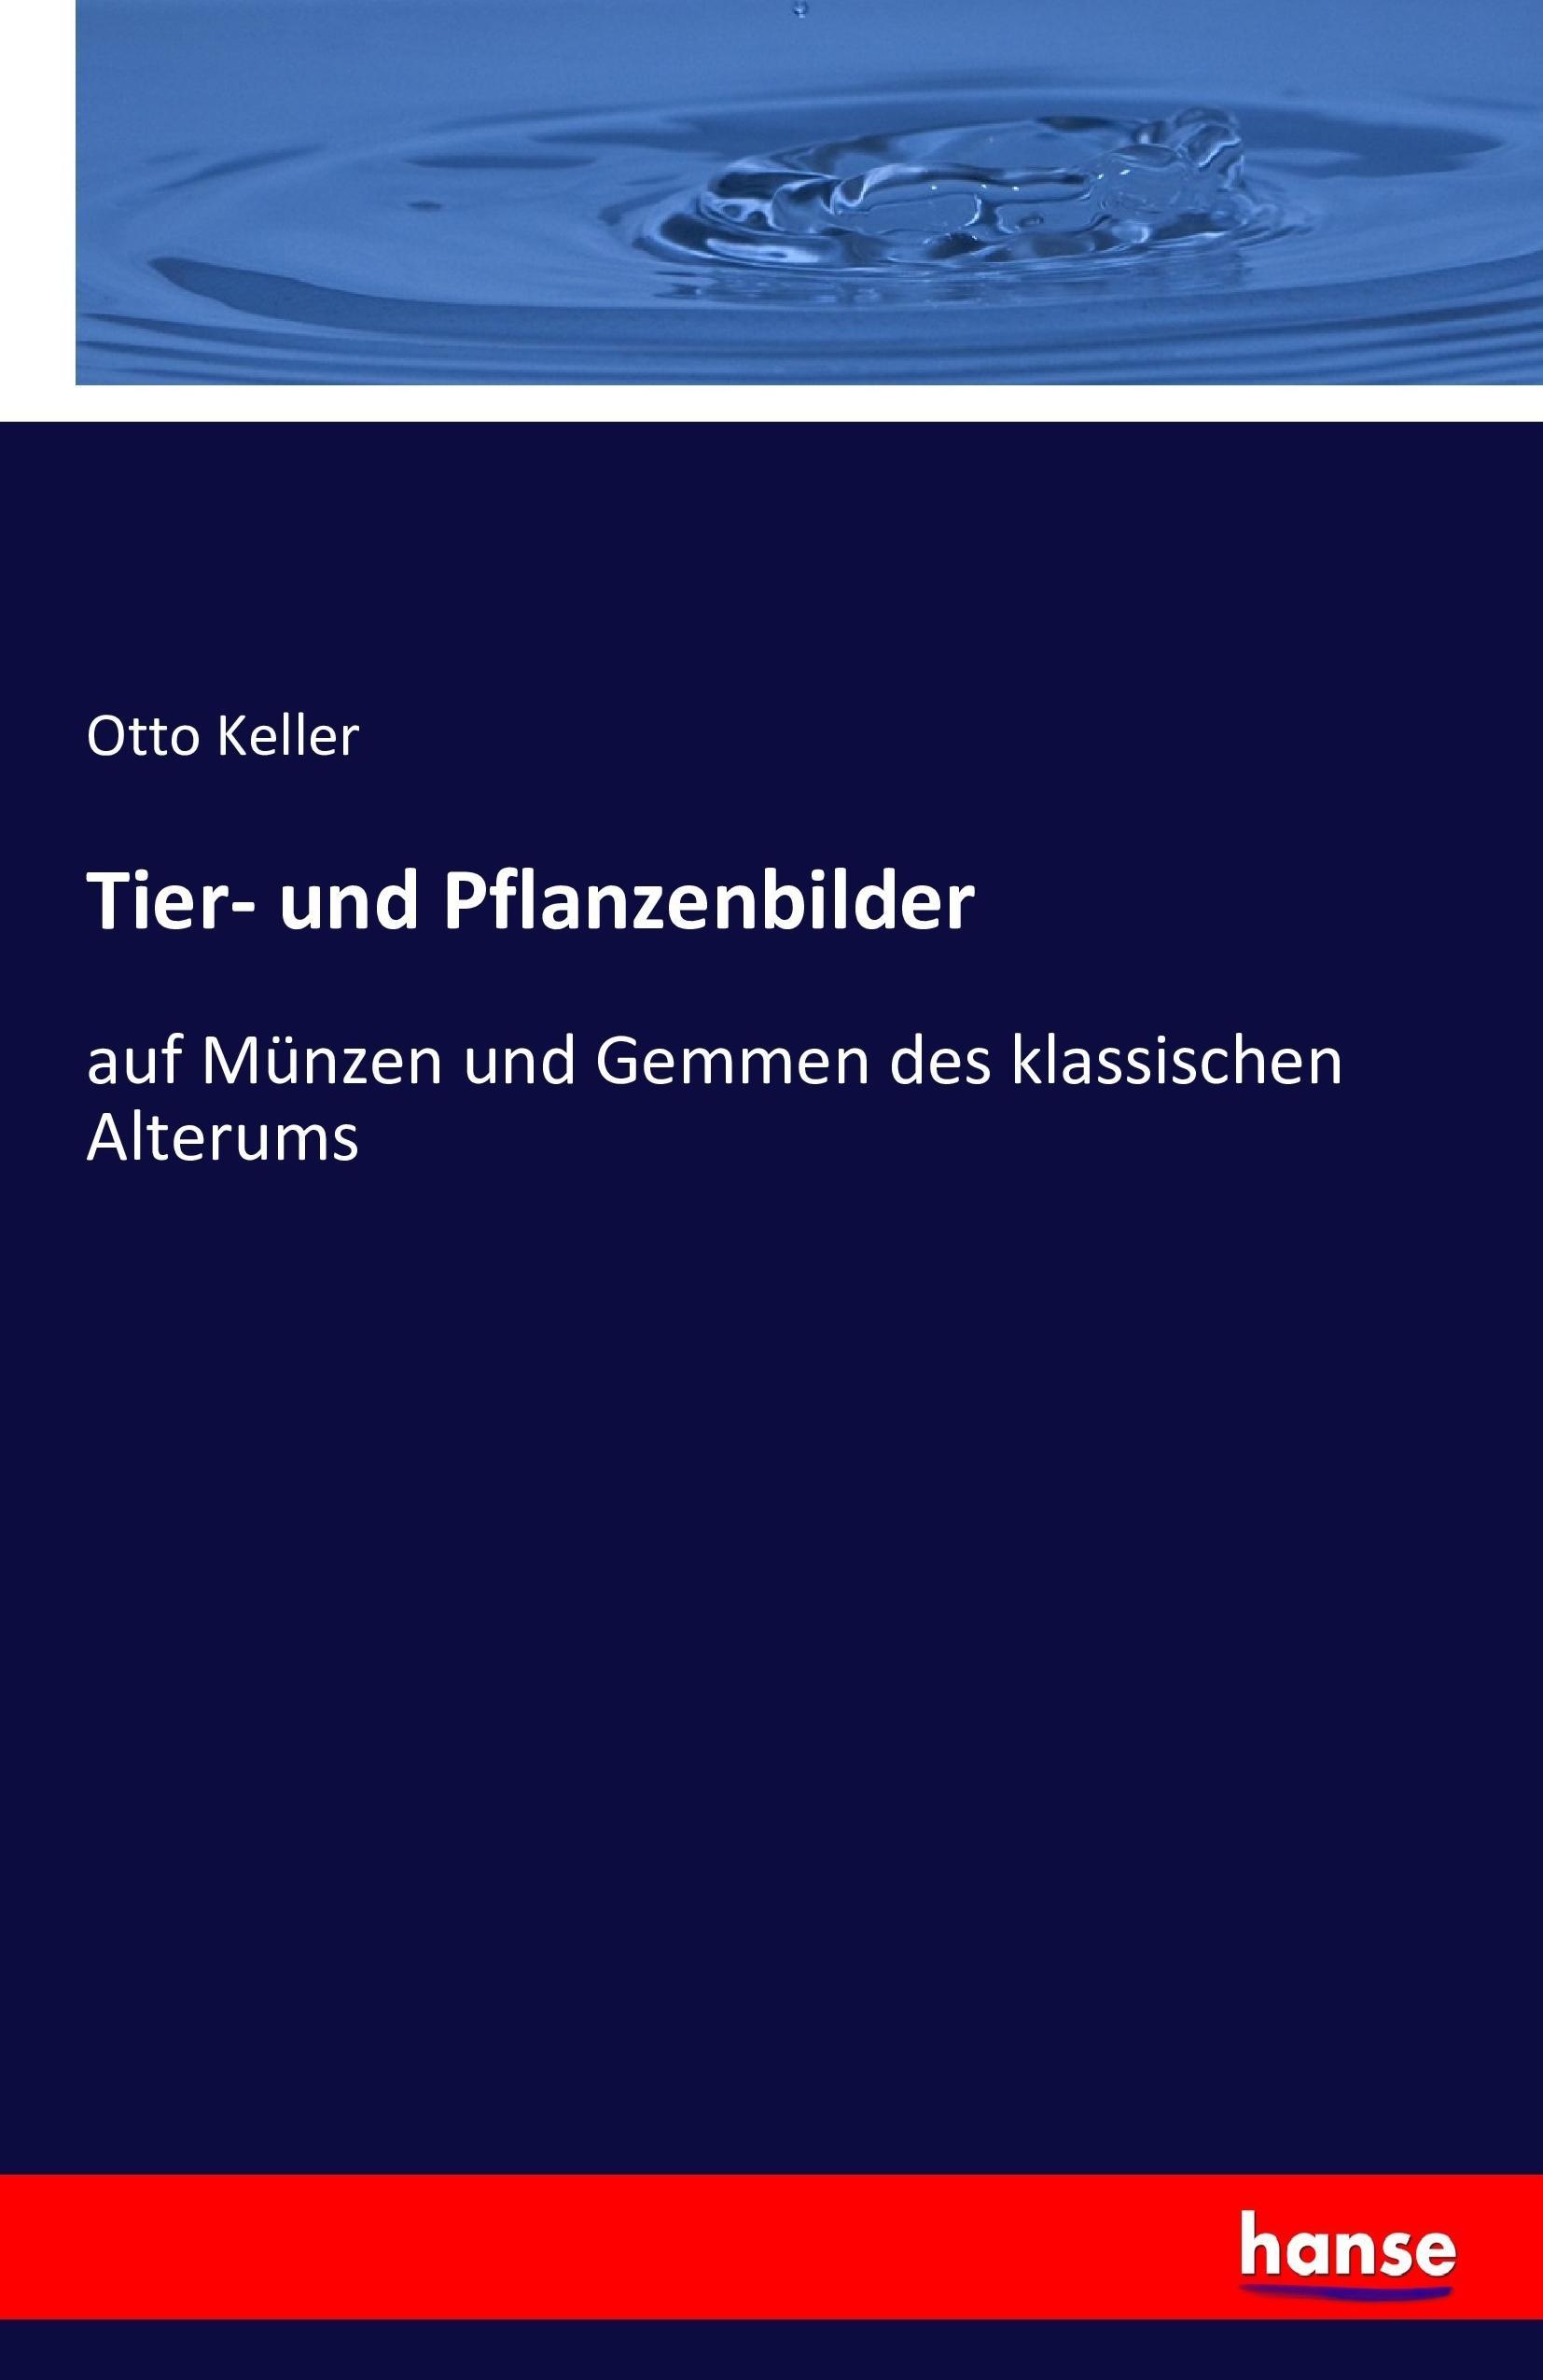 Tier- und Pflanzenbilder - Keller, Otto